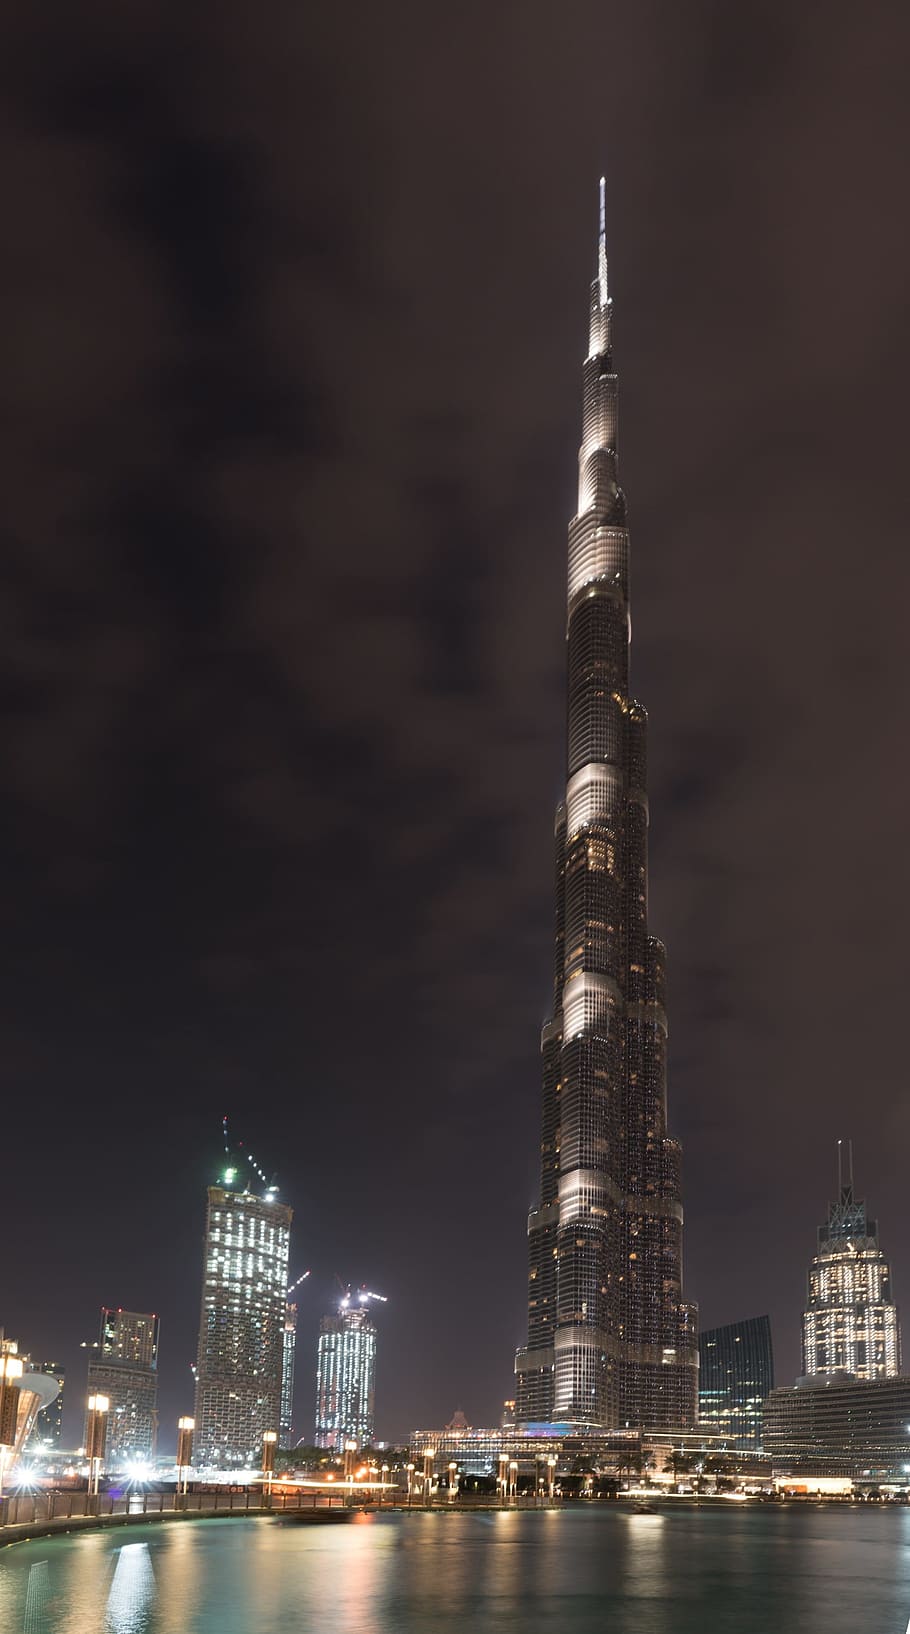 Dubai, Burj Khalifa, Emiratos Árabes Unidos, noche, iluminada, estructura construida, rascacielos, exterior del edificio, Arquitectura, iluminado